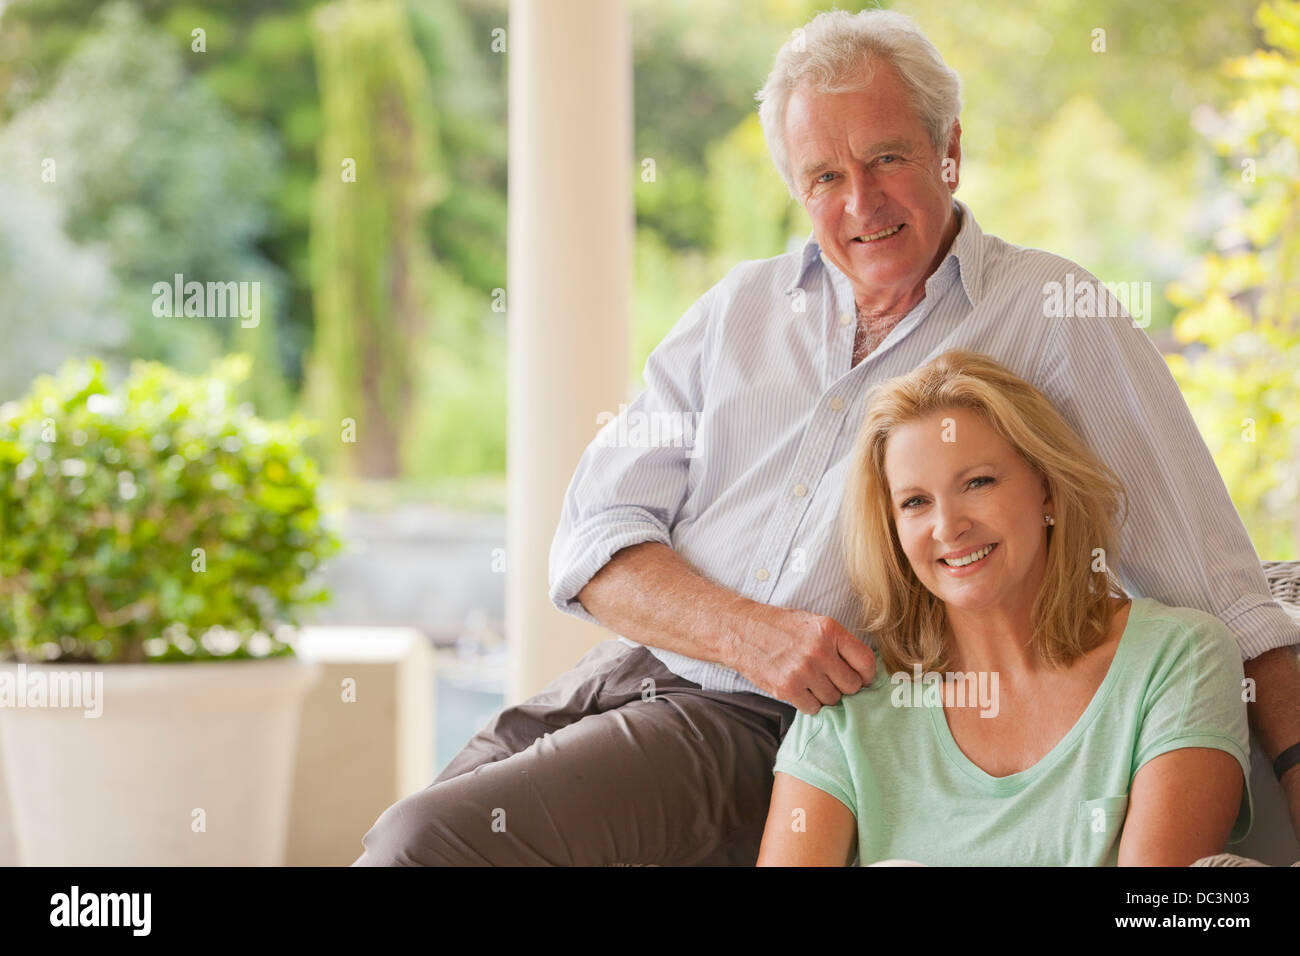 Portrait of smiling couple on porch Banque D'Images